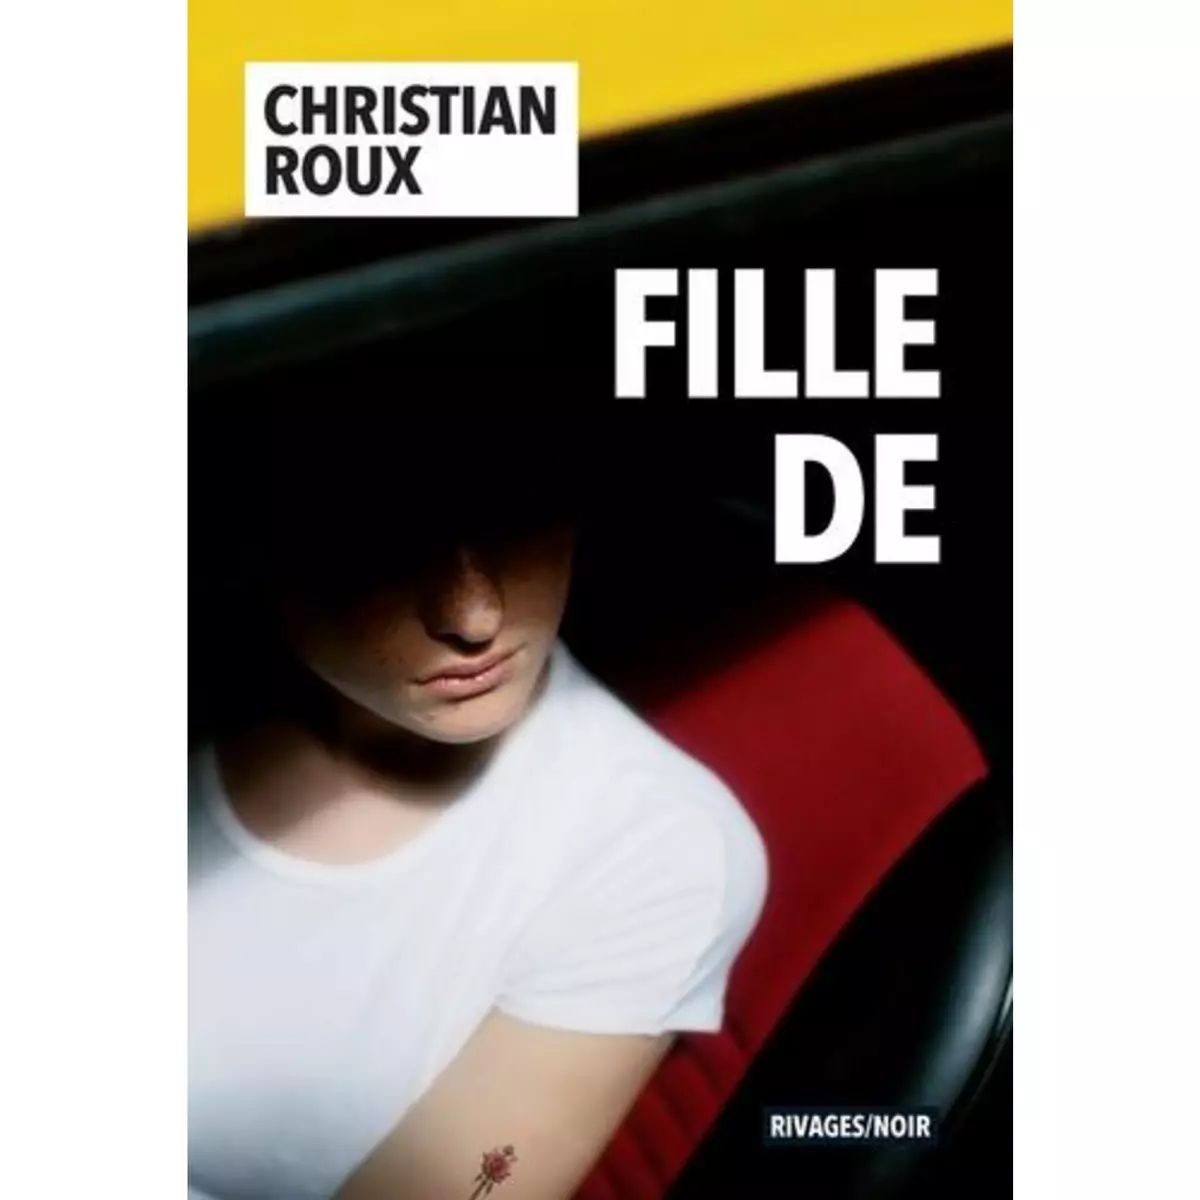  FILLE DE, Roux Christian